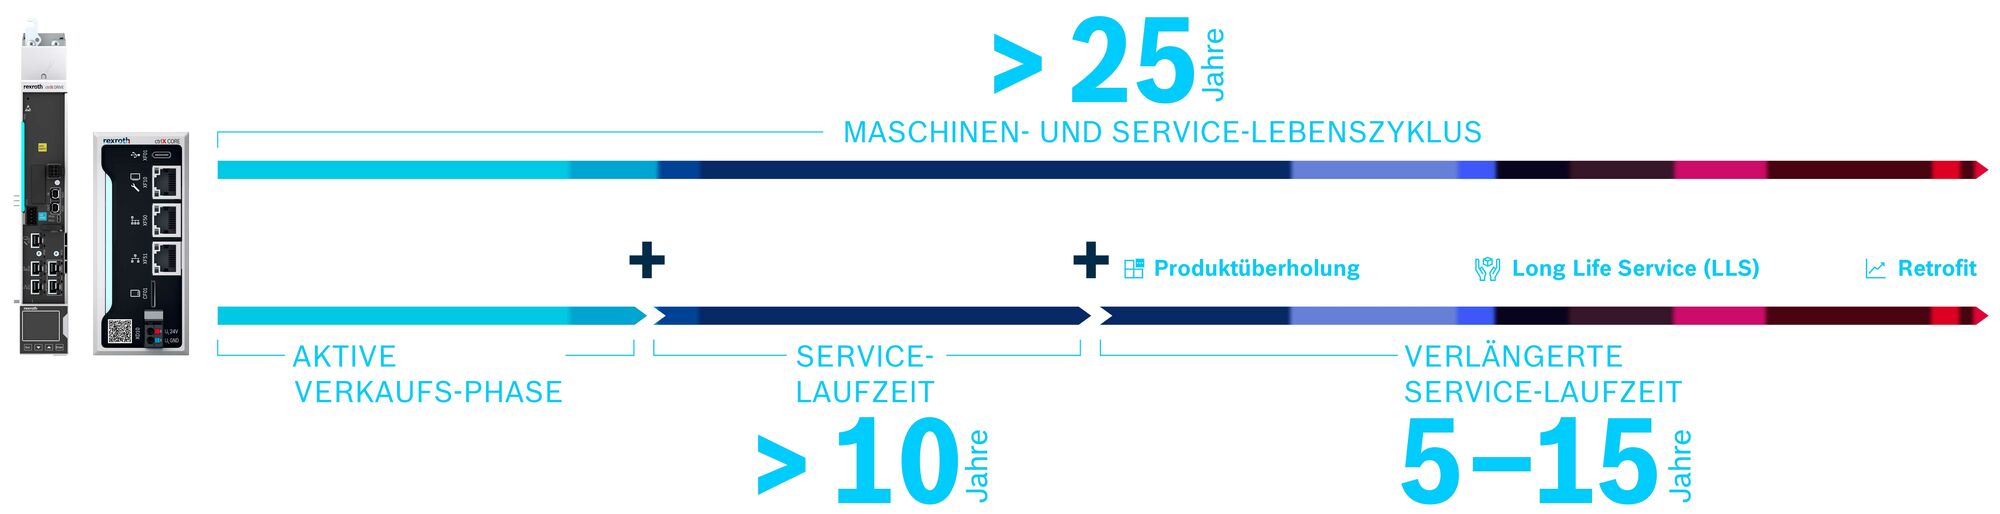 Grafik zeigt den Produktlebenszyklus von Bosch Rexroth Produkten und wie sich dieser durch Maßnahmen wie Produktüberholung, Retrofit und Long Life Service auf 25 Jahre verlängern lässt.